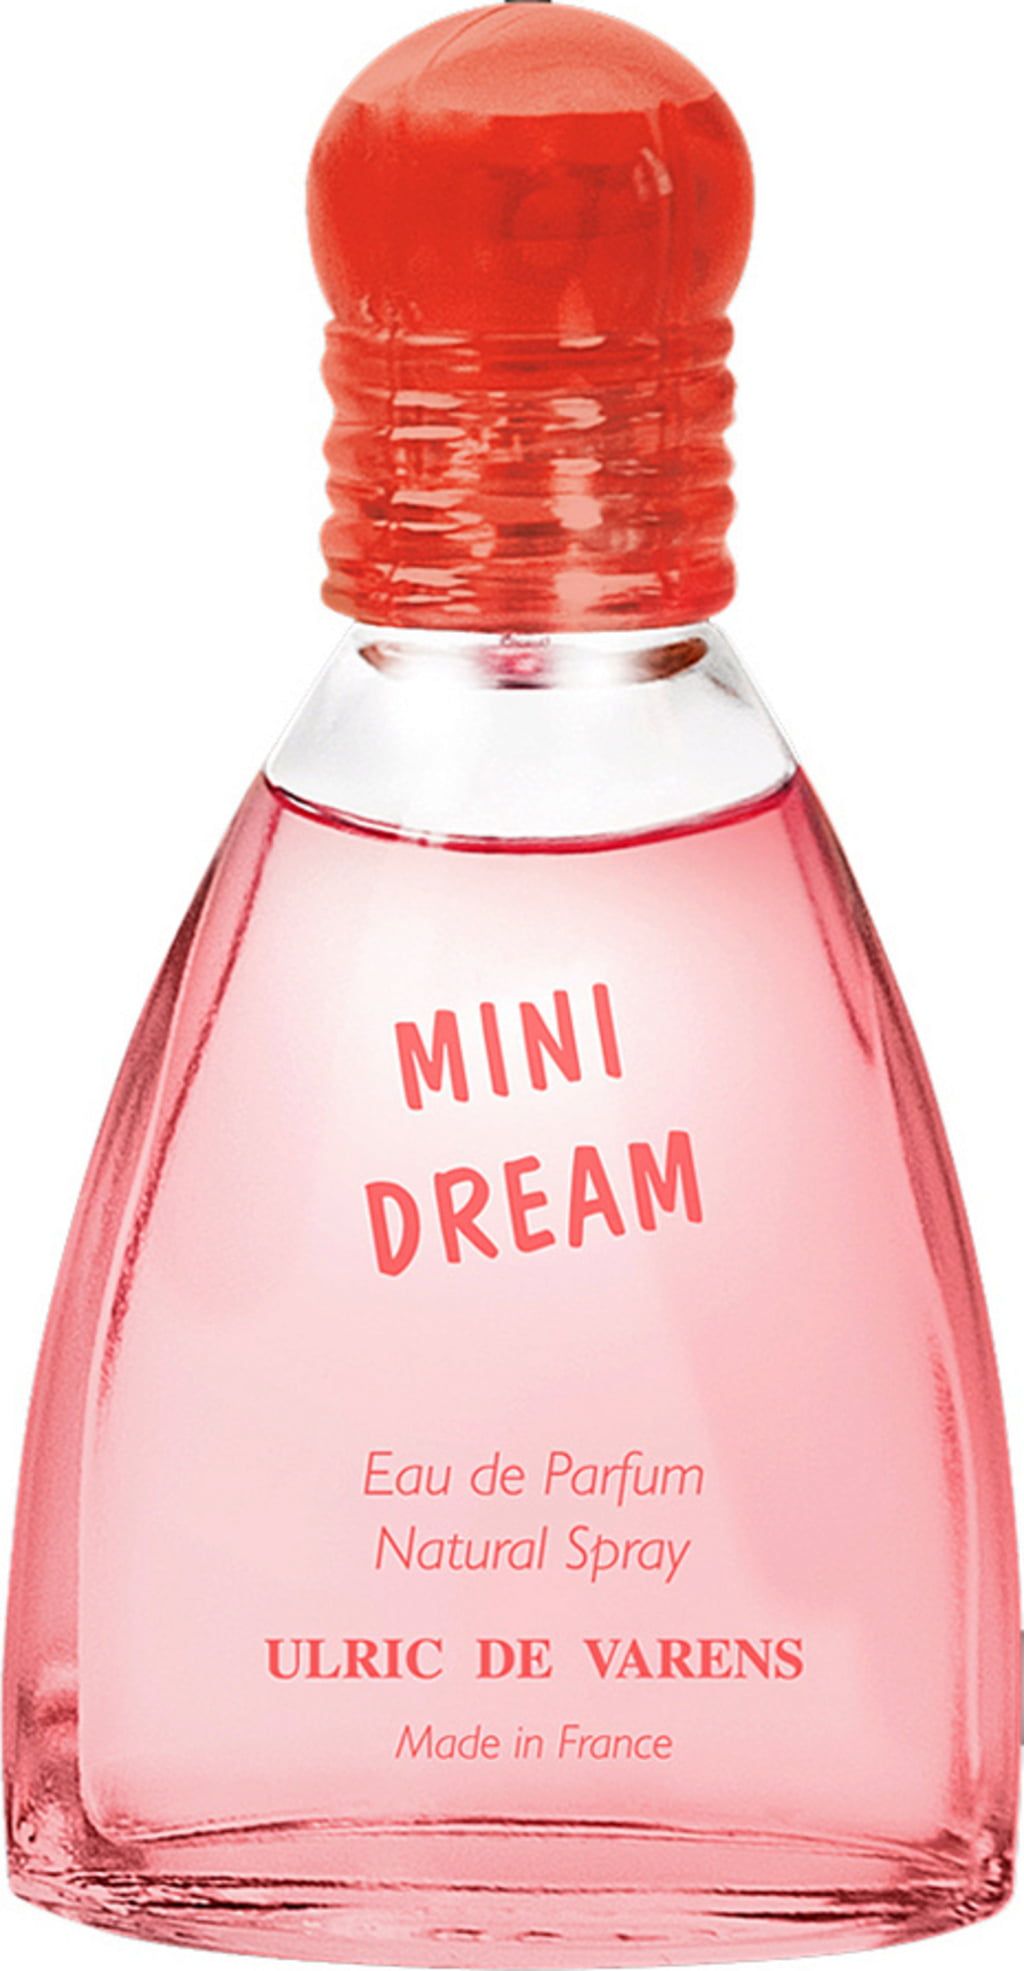 UDV MINI DREAM Eau de Parfum, 25 ml - oh feliz Onlineshop Portugal